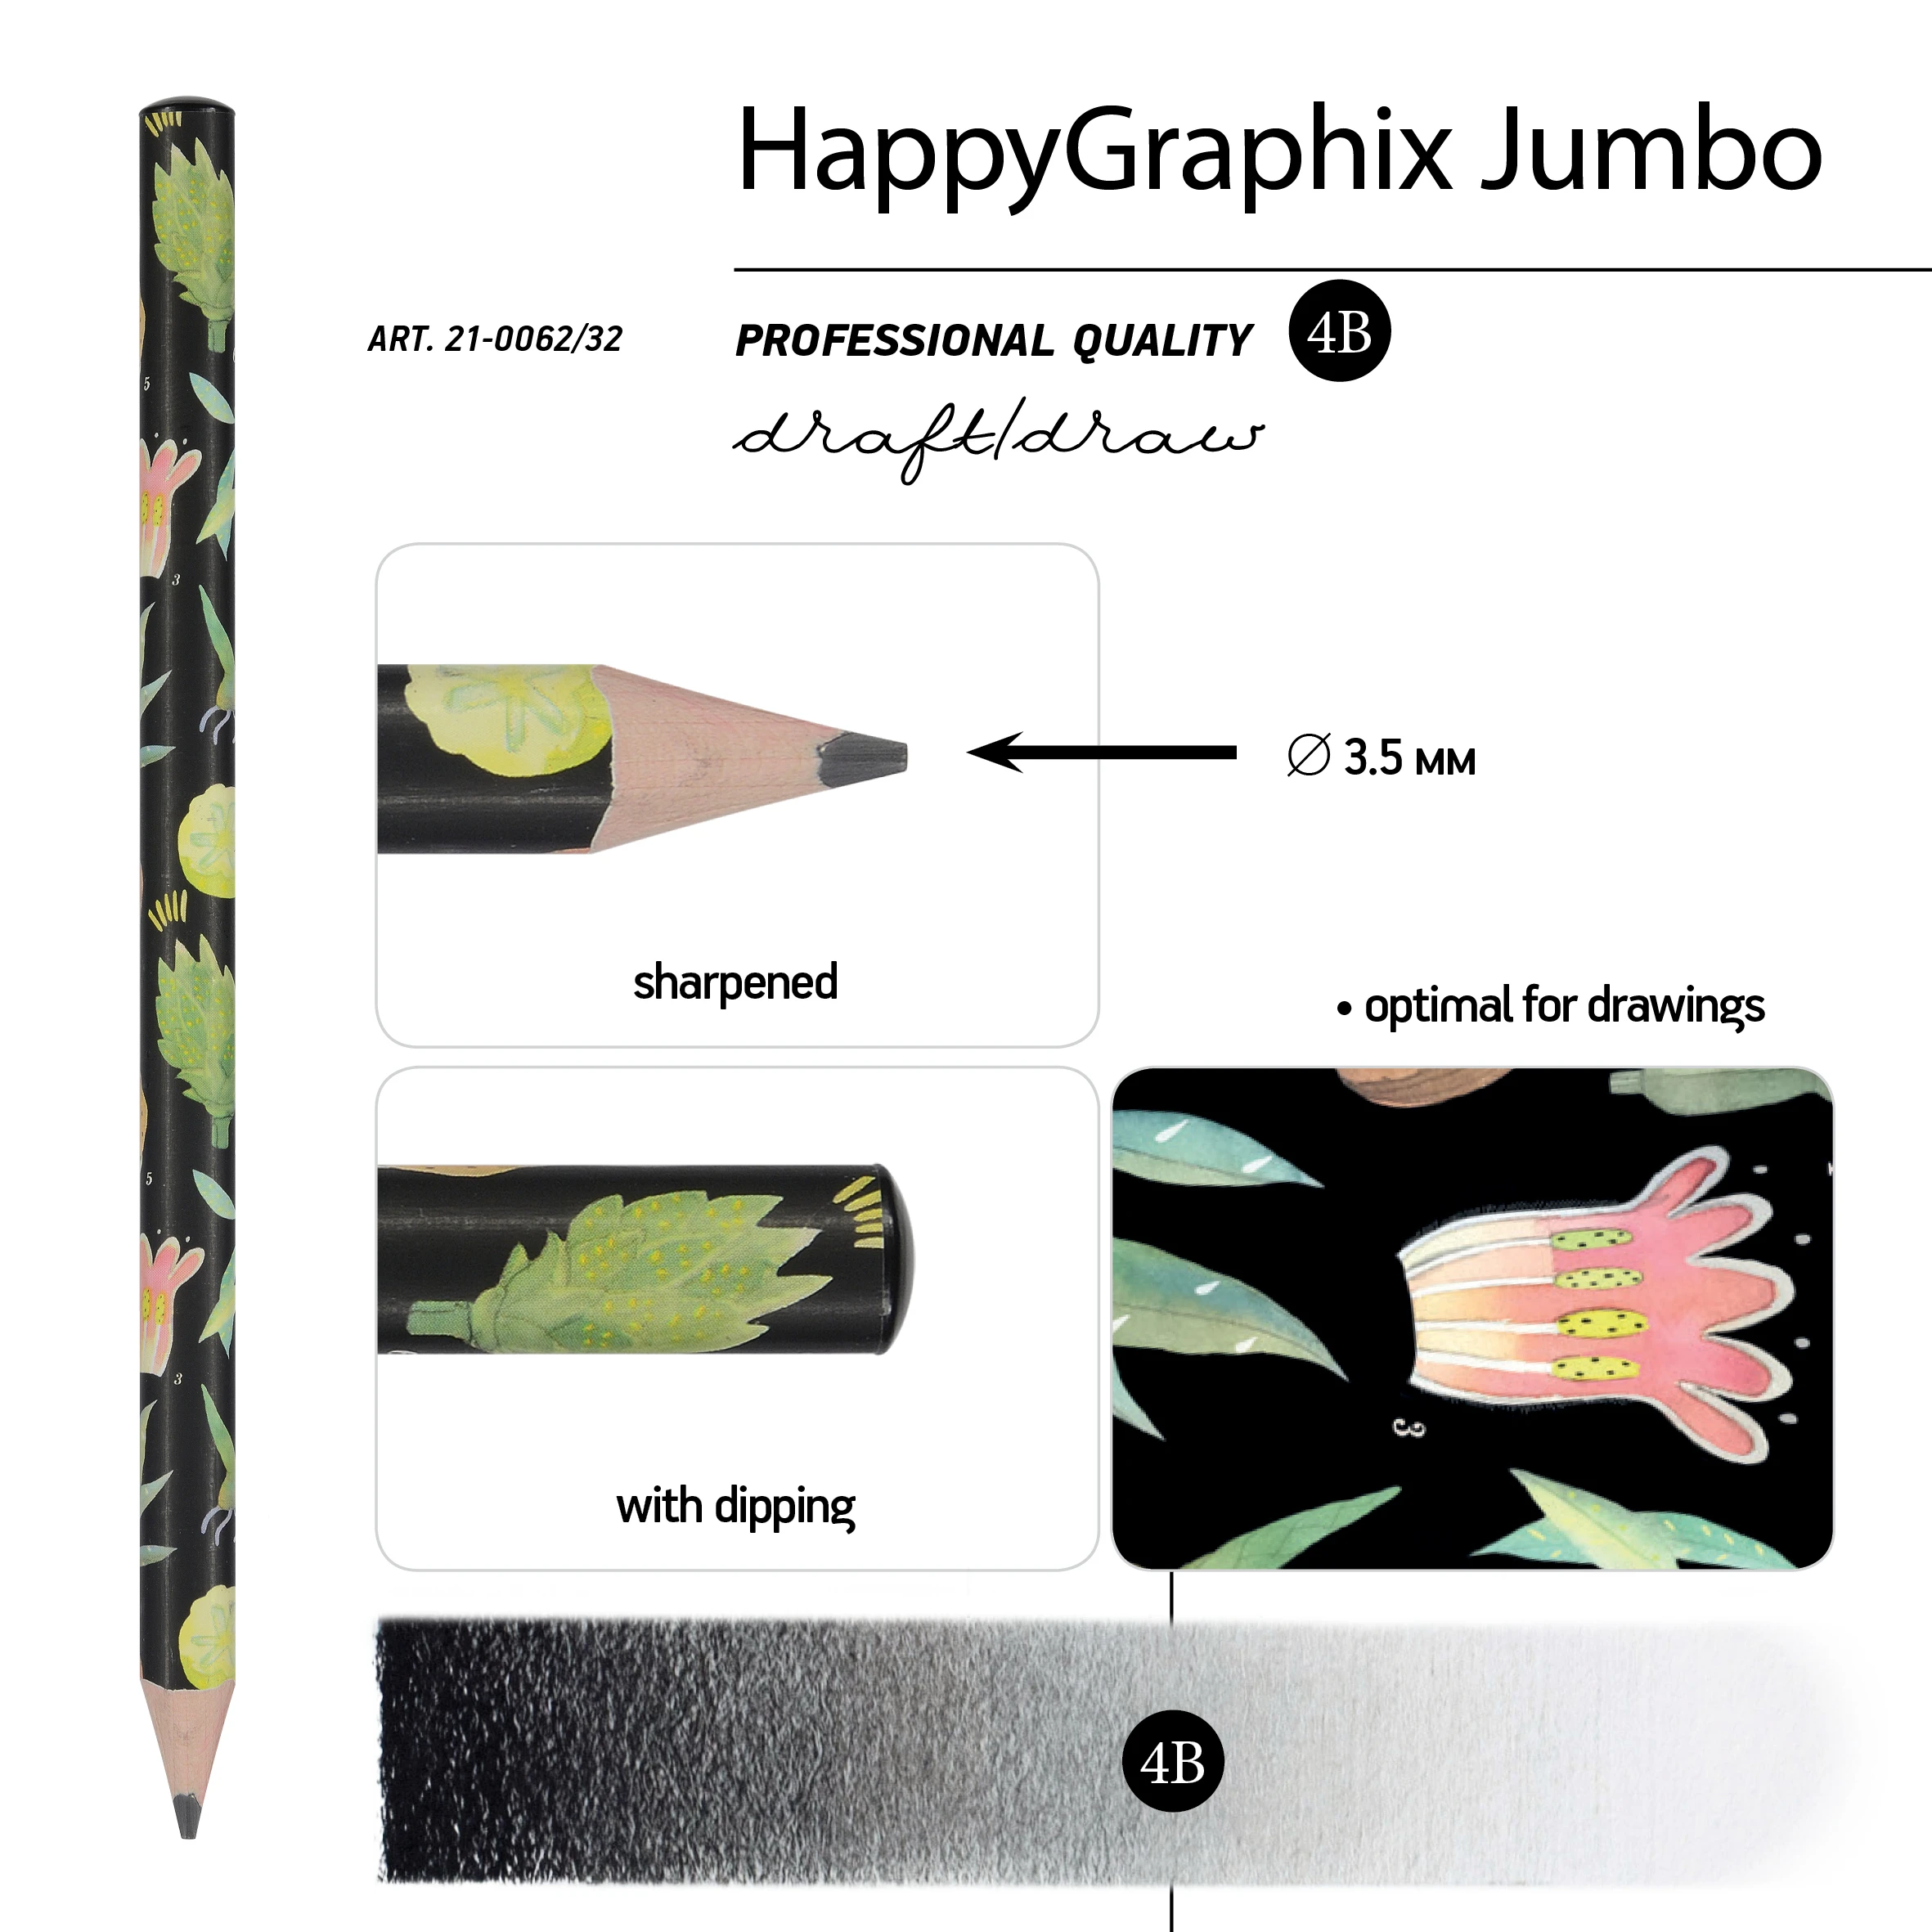 КАРАНДАШ ЧЕРНОГРАФИТОВЫЙ "HappyGraphix Jumbo. Ботаника" 4В, 3.5 MM